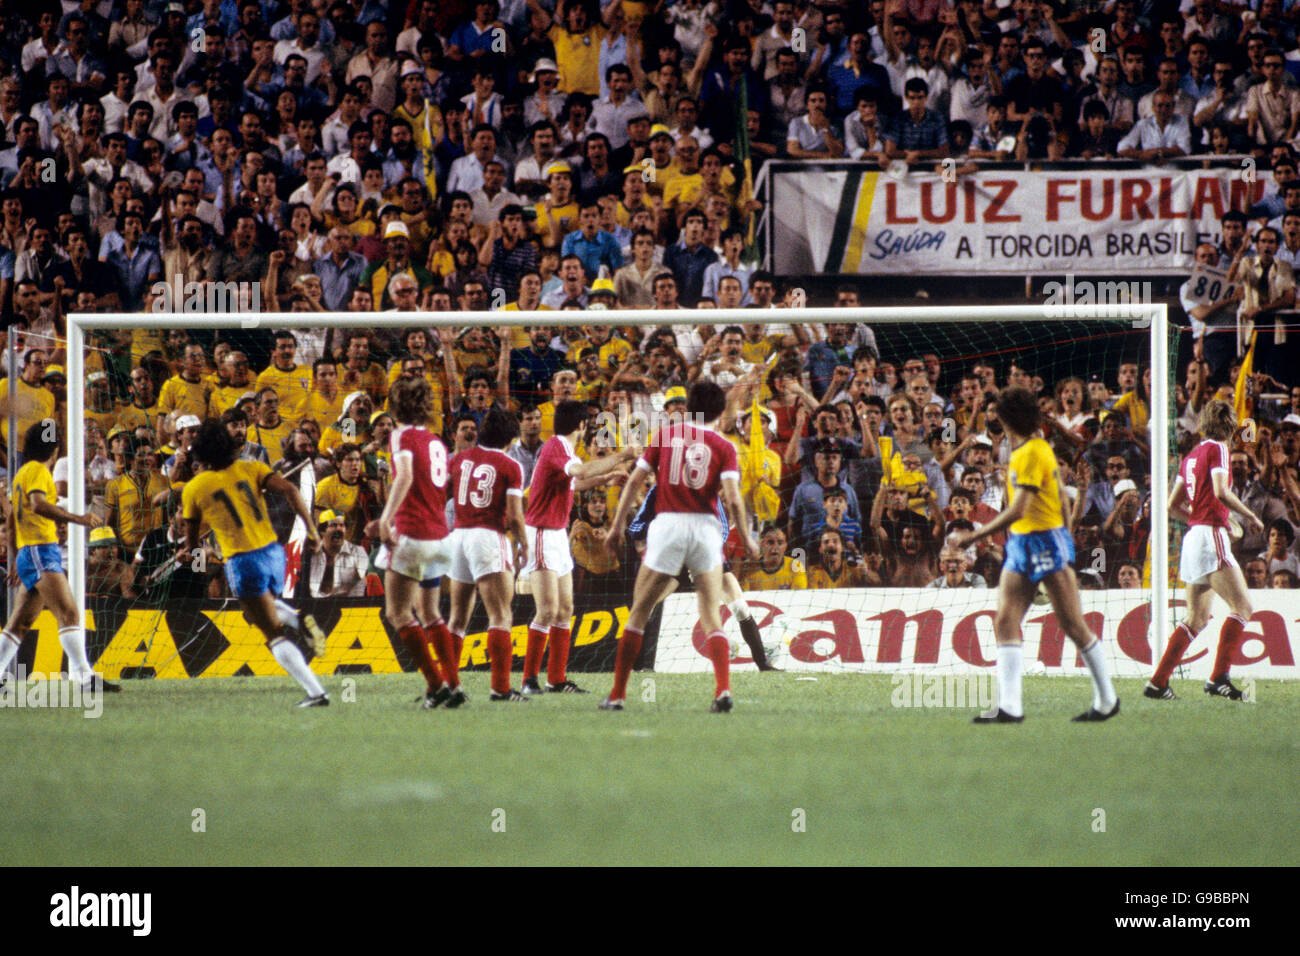 Calcio - Coppa del mondo Spagna 1982 - Gruppo sei - Brasile / URSS - Stadio Sanchez Pizjuan, Siviglia. Il brasiliano Eder (11) segna il gol vincente Foto Stock